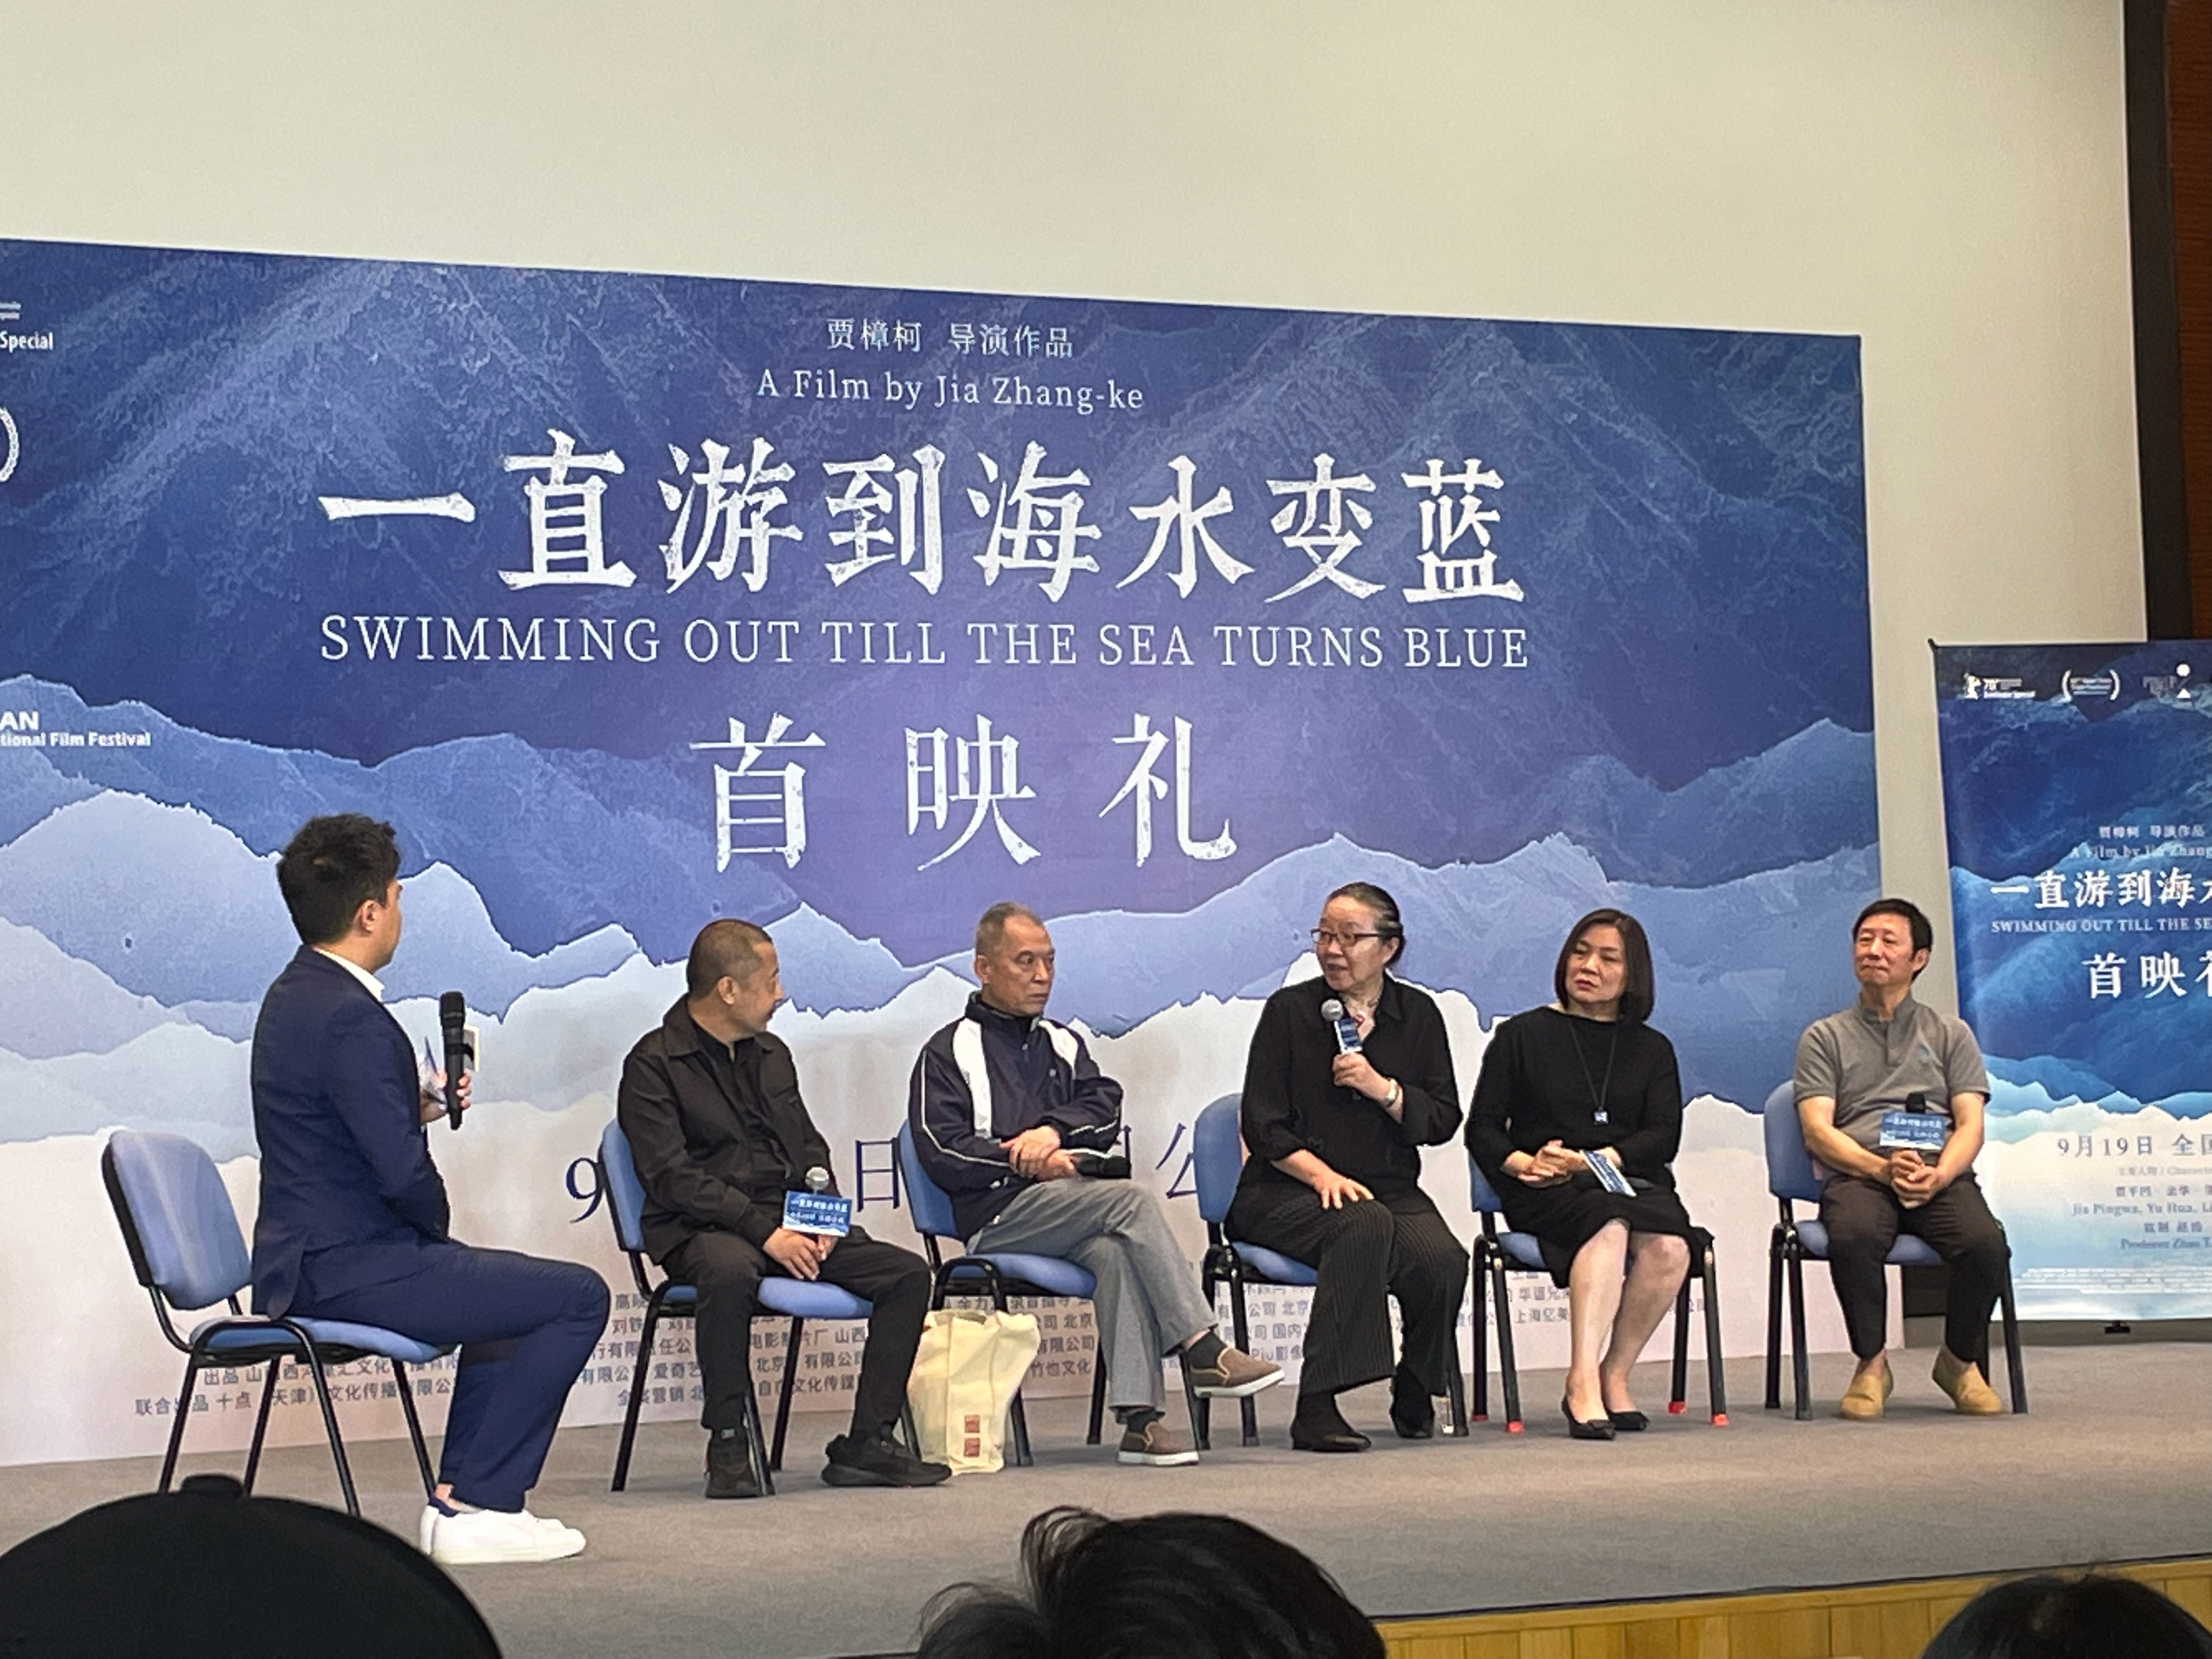 《一直游到海水变蓝》北京首映 贾樟柯说让演员考证会伤害创作